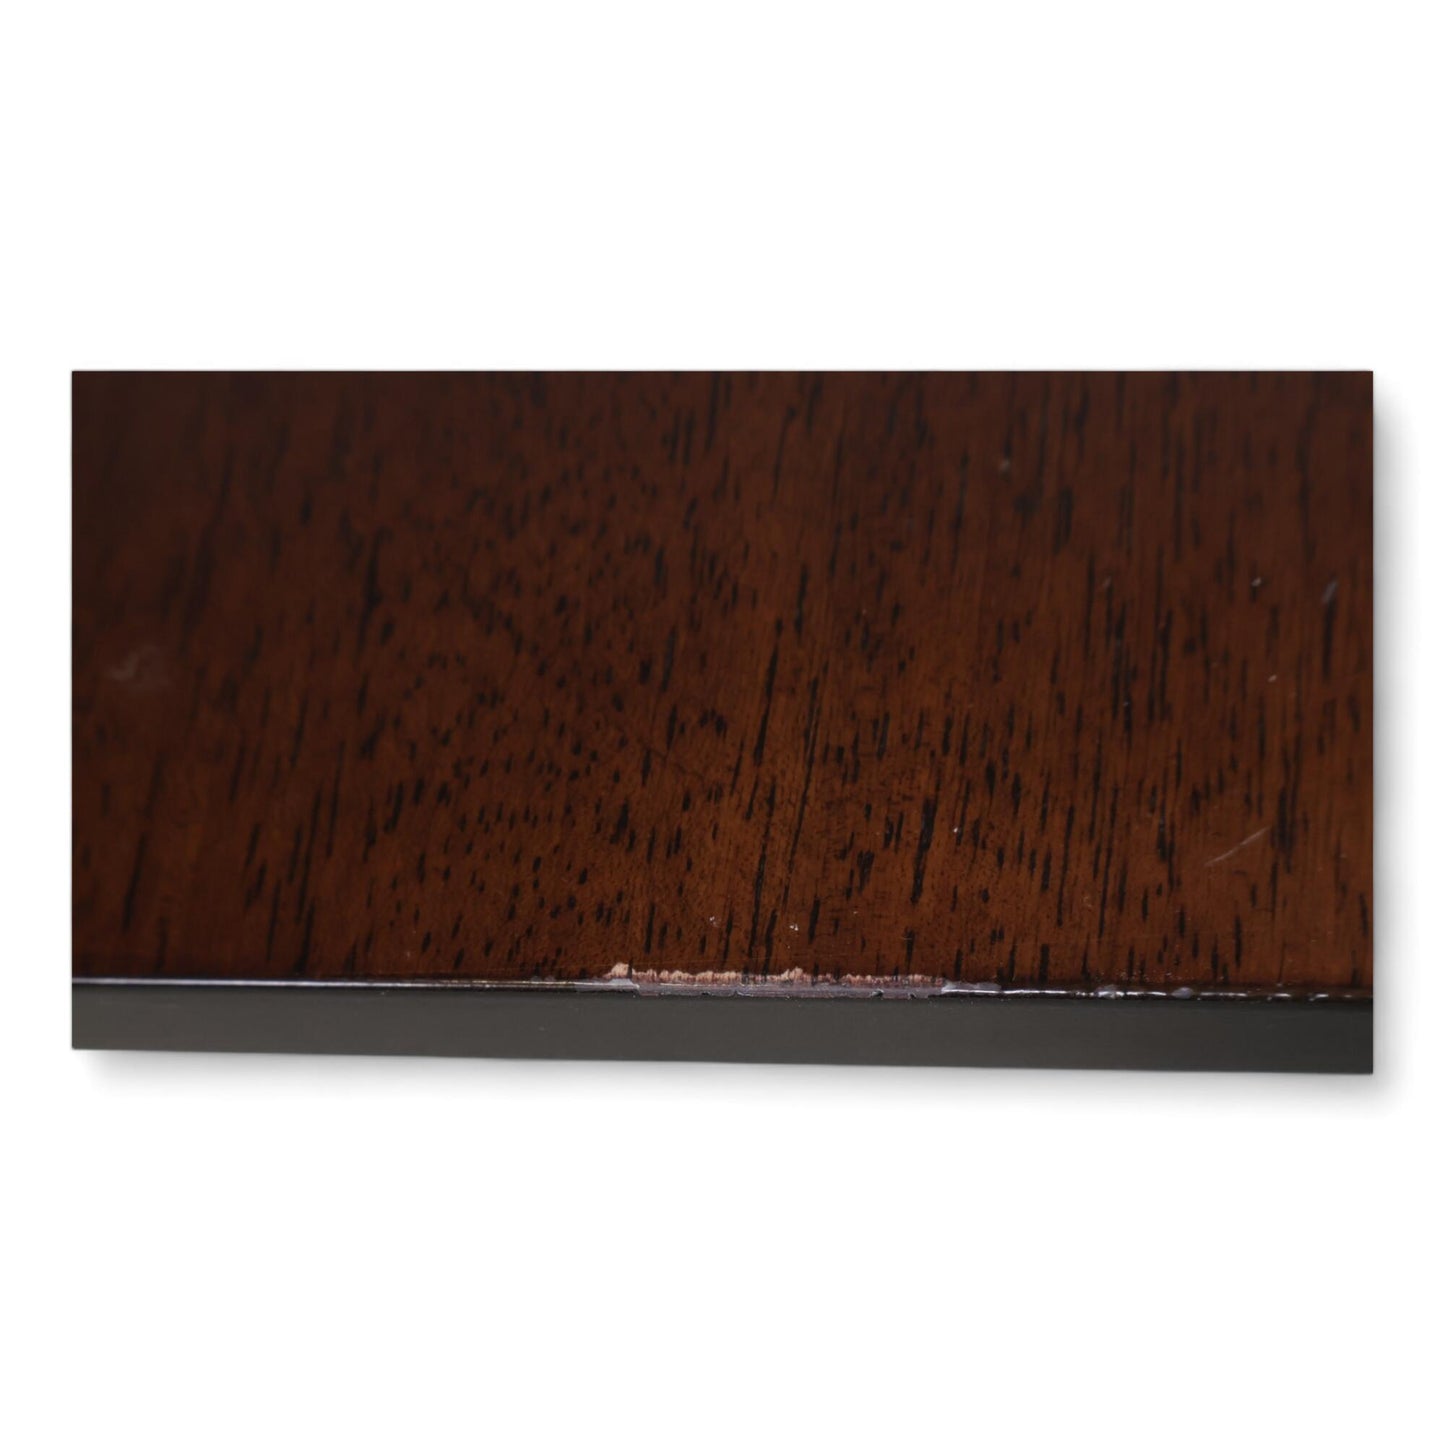 Nyrenset | Uttrekkbart spisebord i brun/hvit fra Jysk